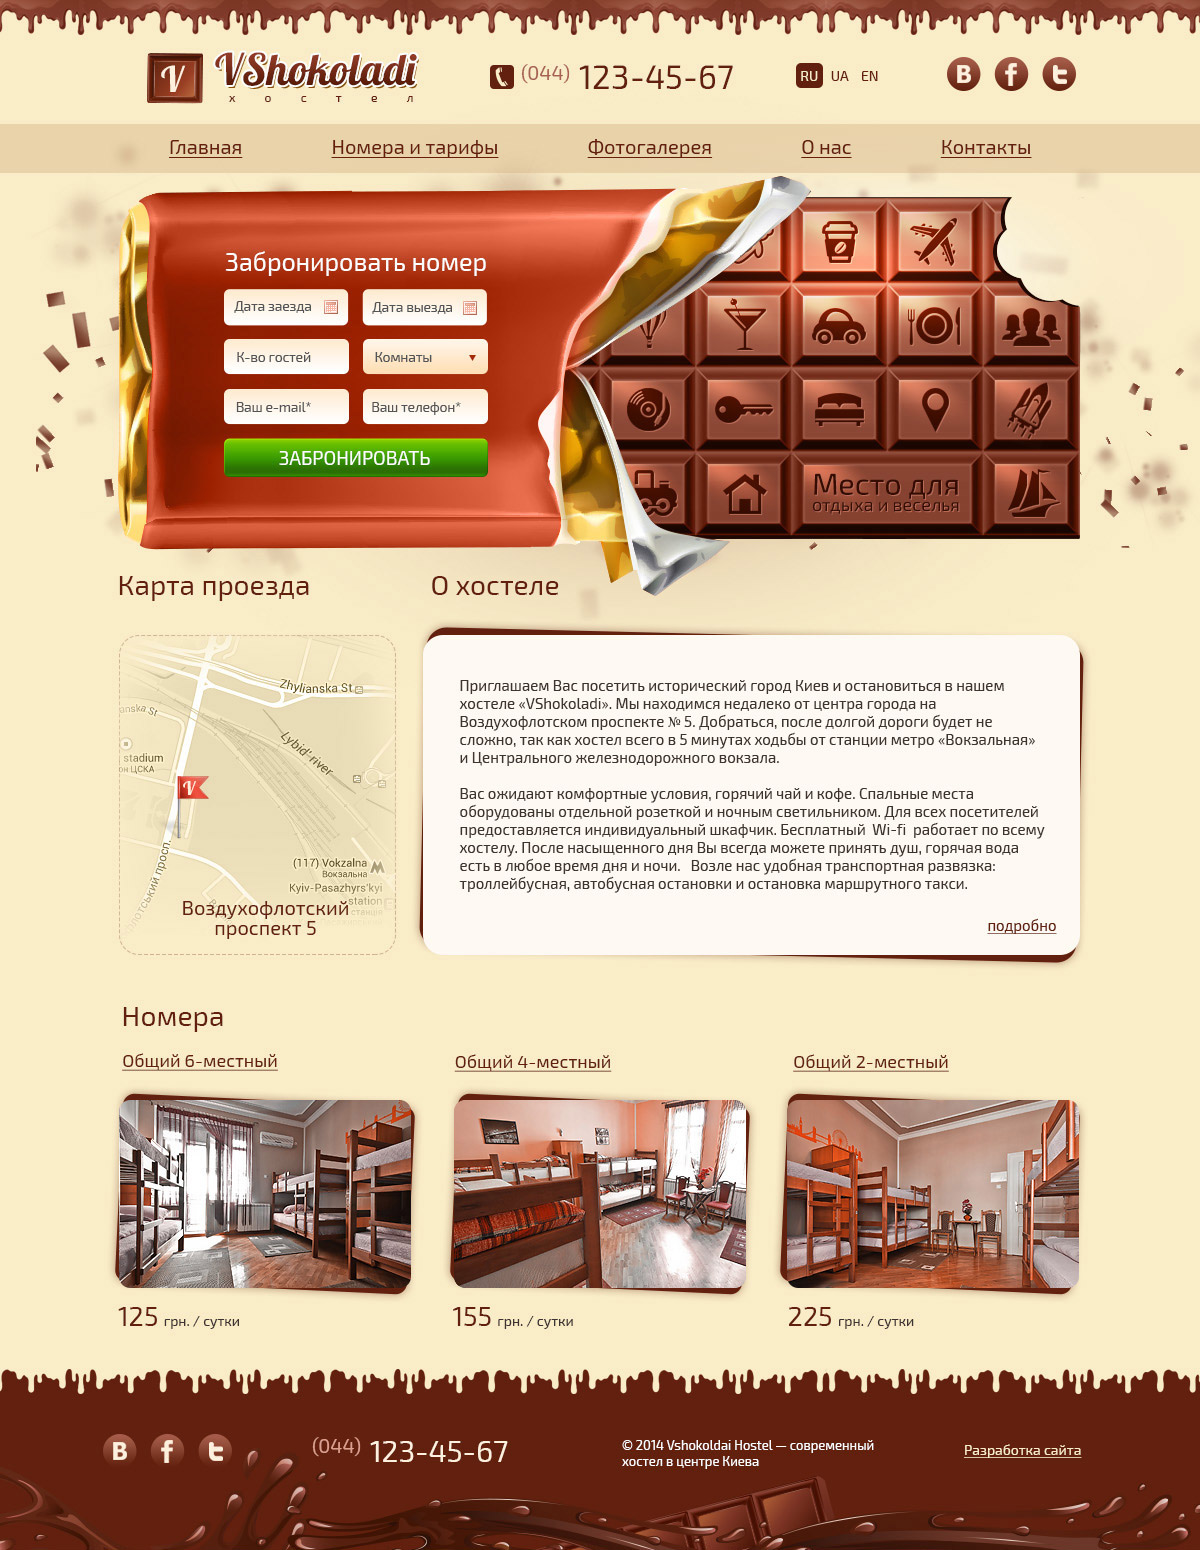 Дизайн главной страницы для хостела Vshokoladi